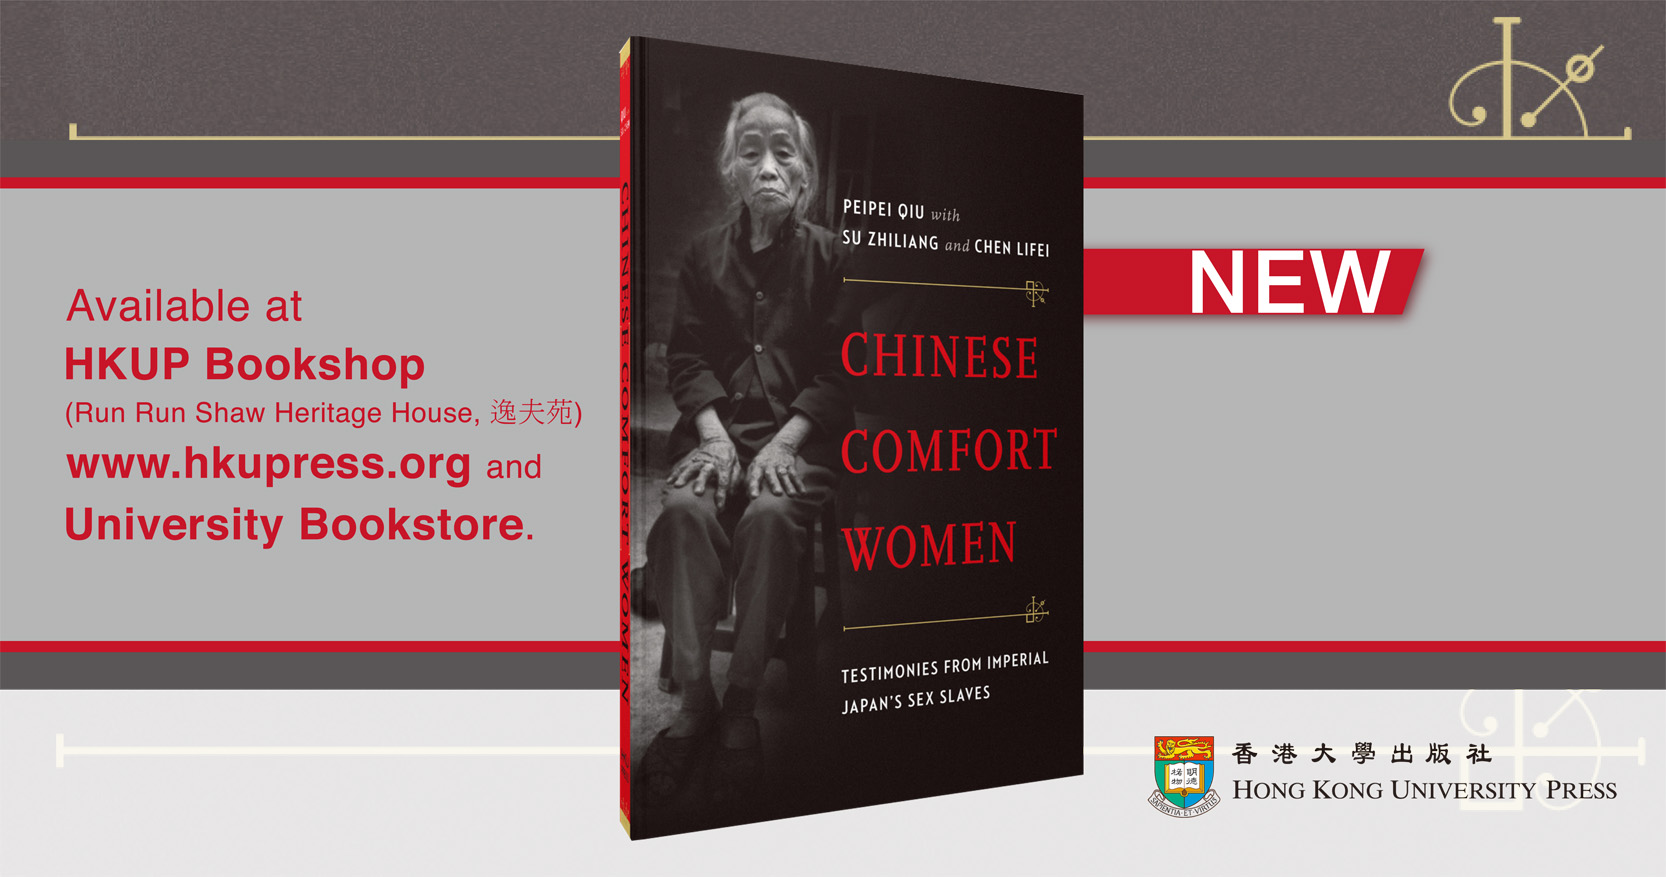 Chinese Comfort Women - New Book!